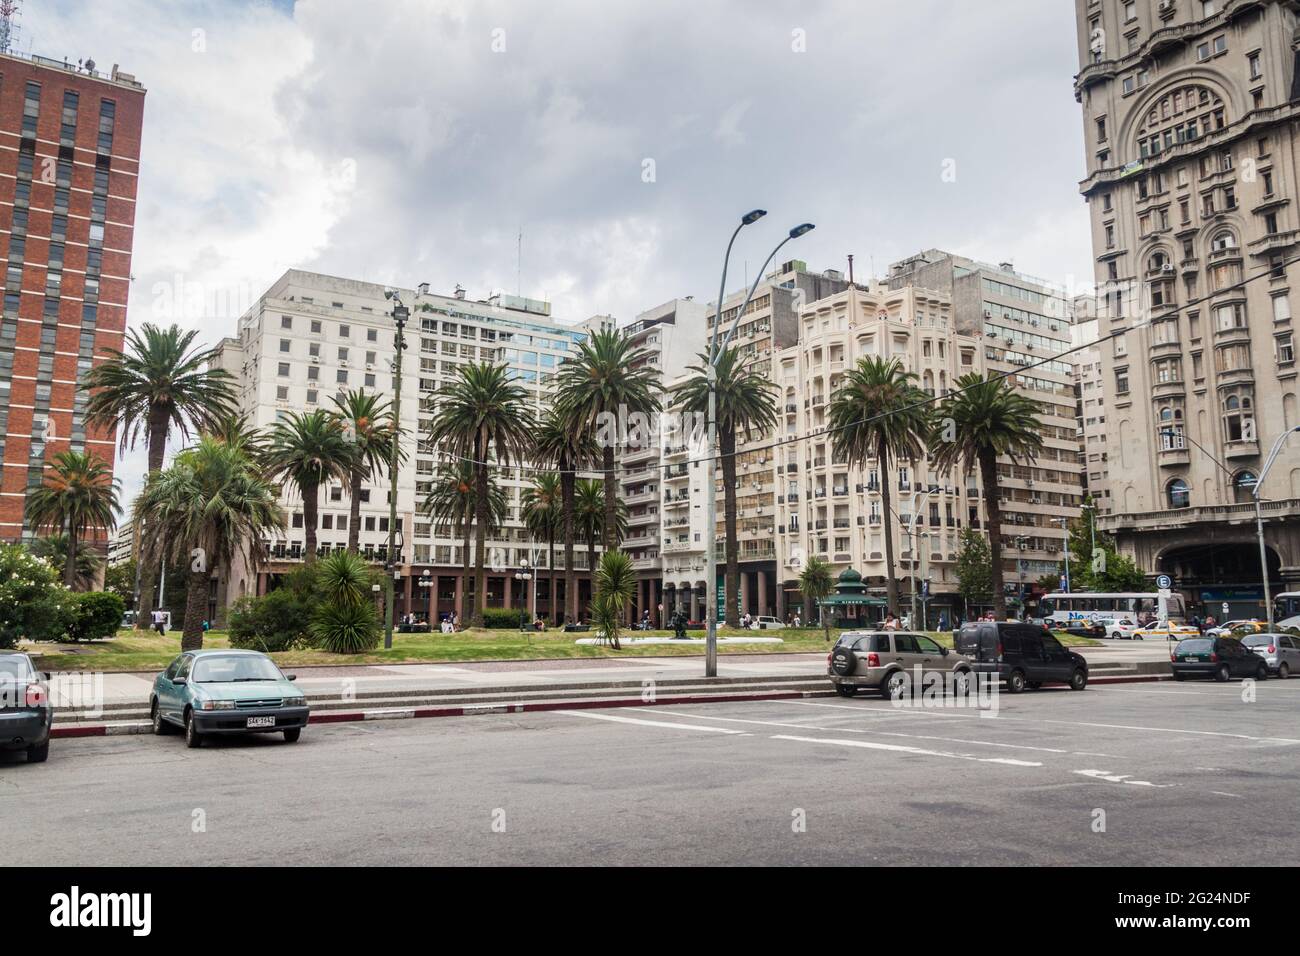 MONTEVIDEO, URUGUAY - 18 FÉVRIER 2015 : vue sur la place Plaza Independecia dans le centre de Montevideo. Banque D'Images